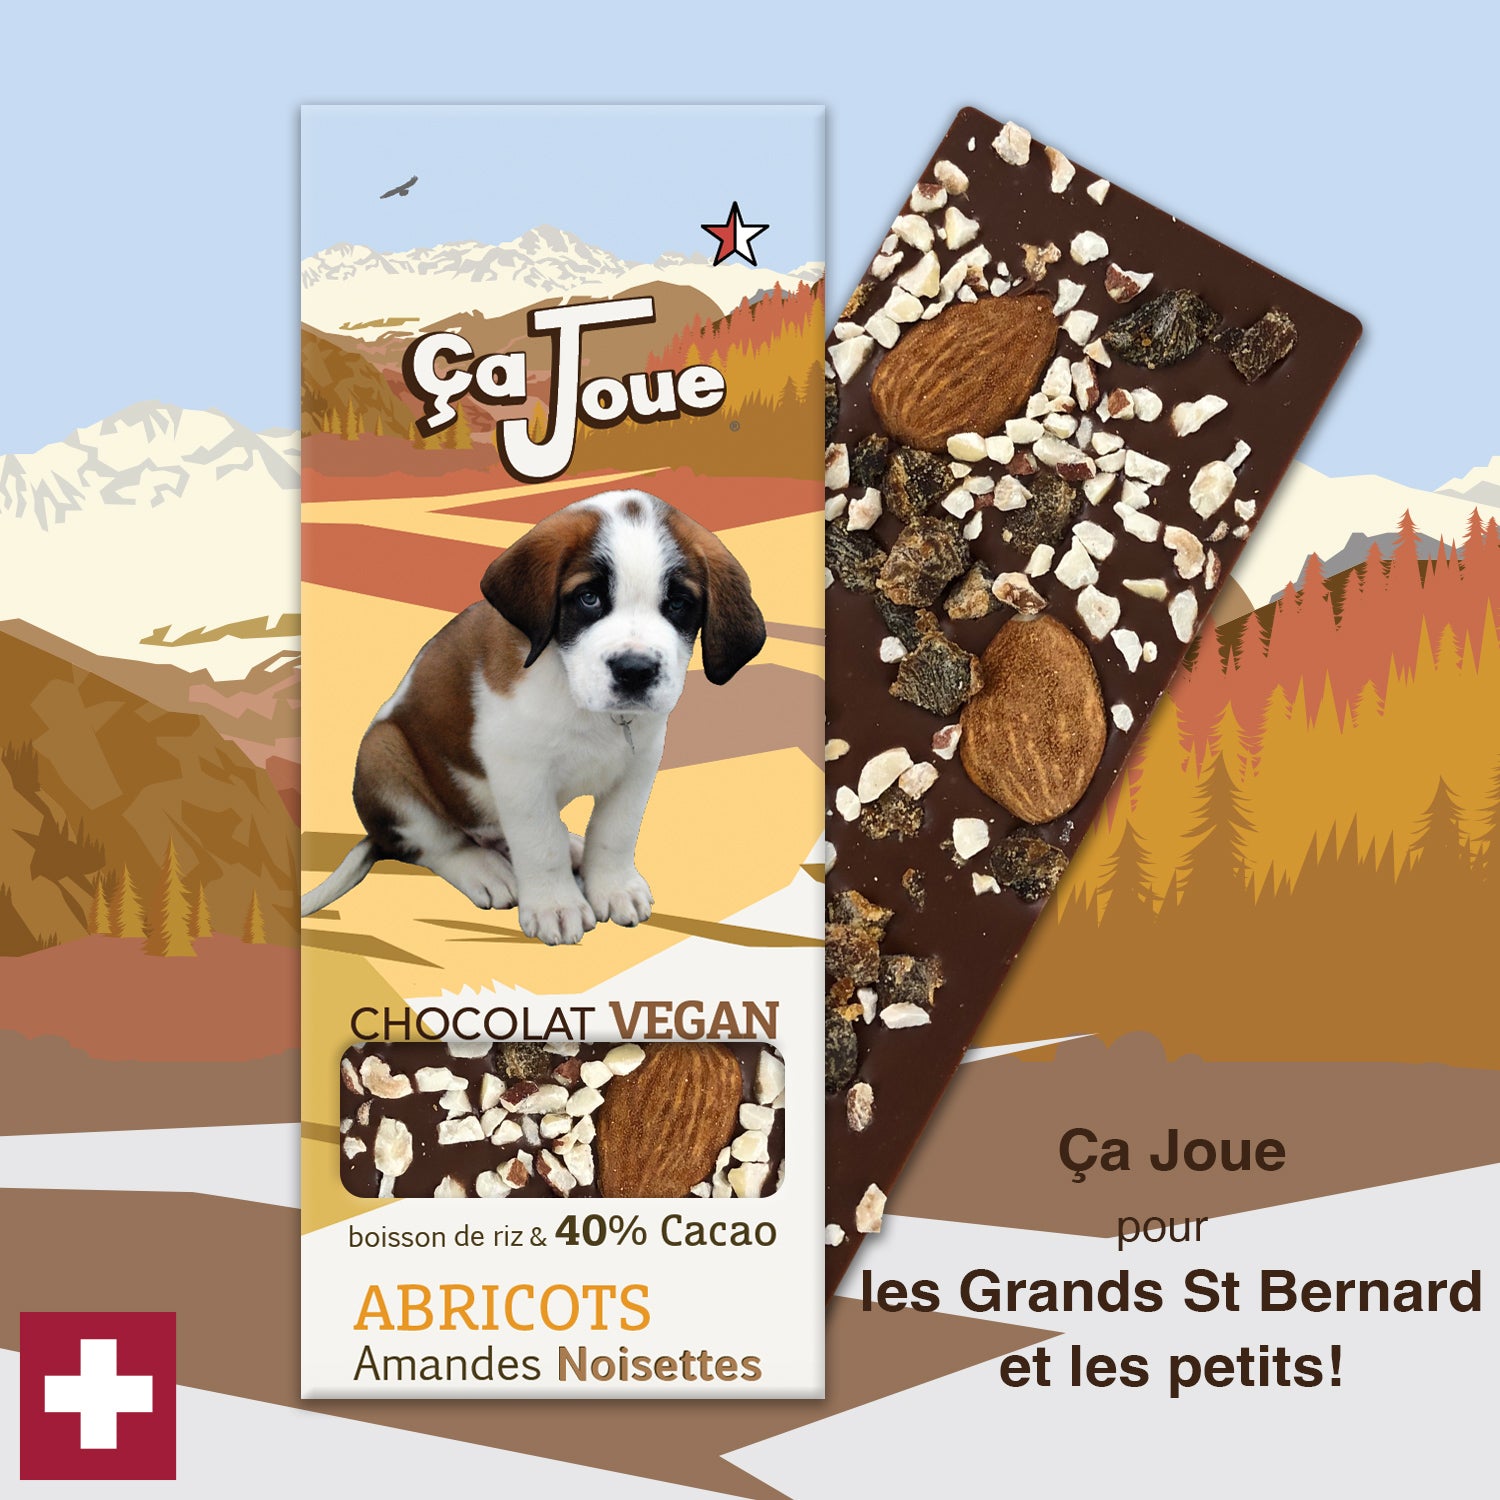 Ça Joue für die für kleine Bernhardiner (Ref-BV4) Schokolade aus Val de Bagnes